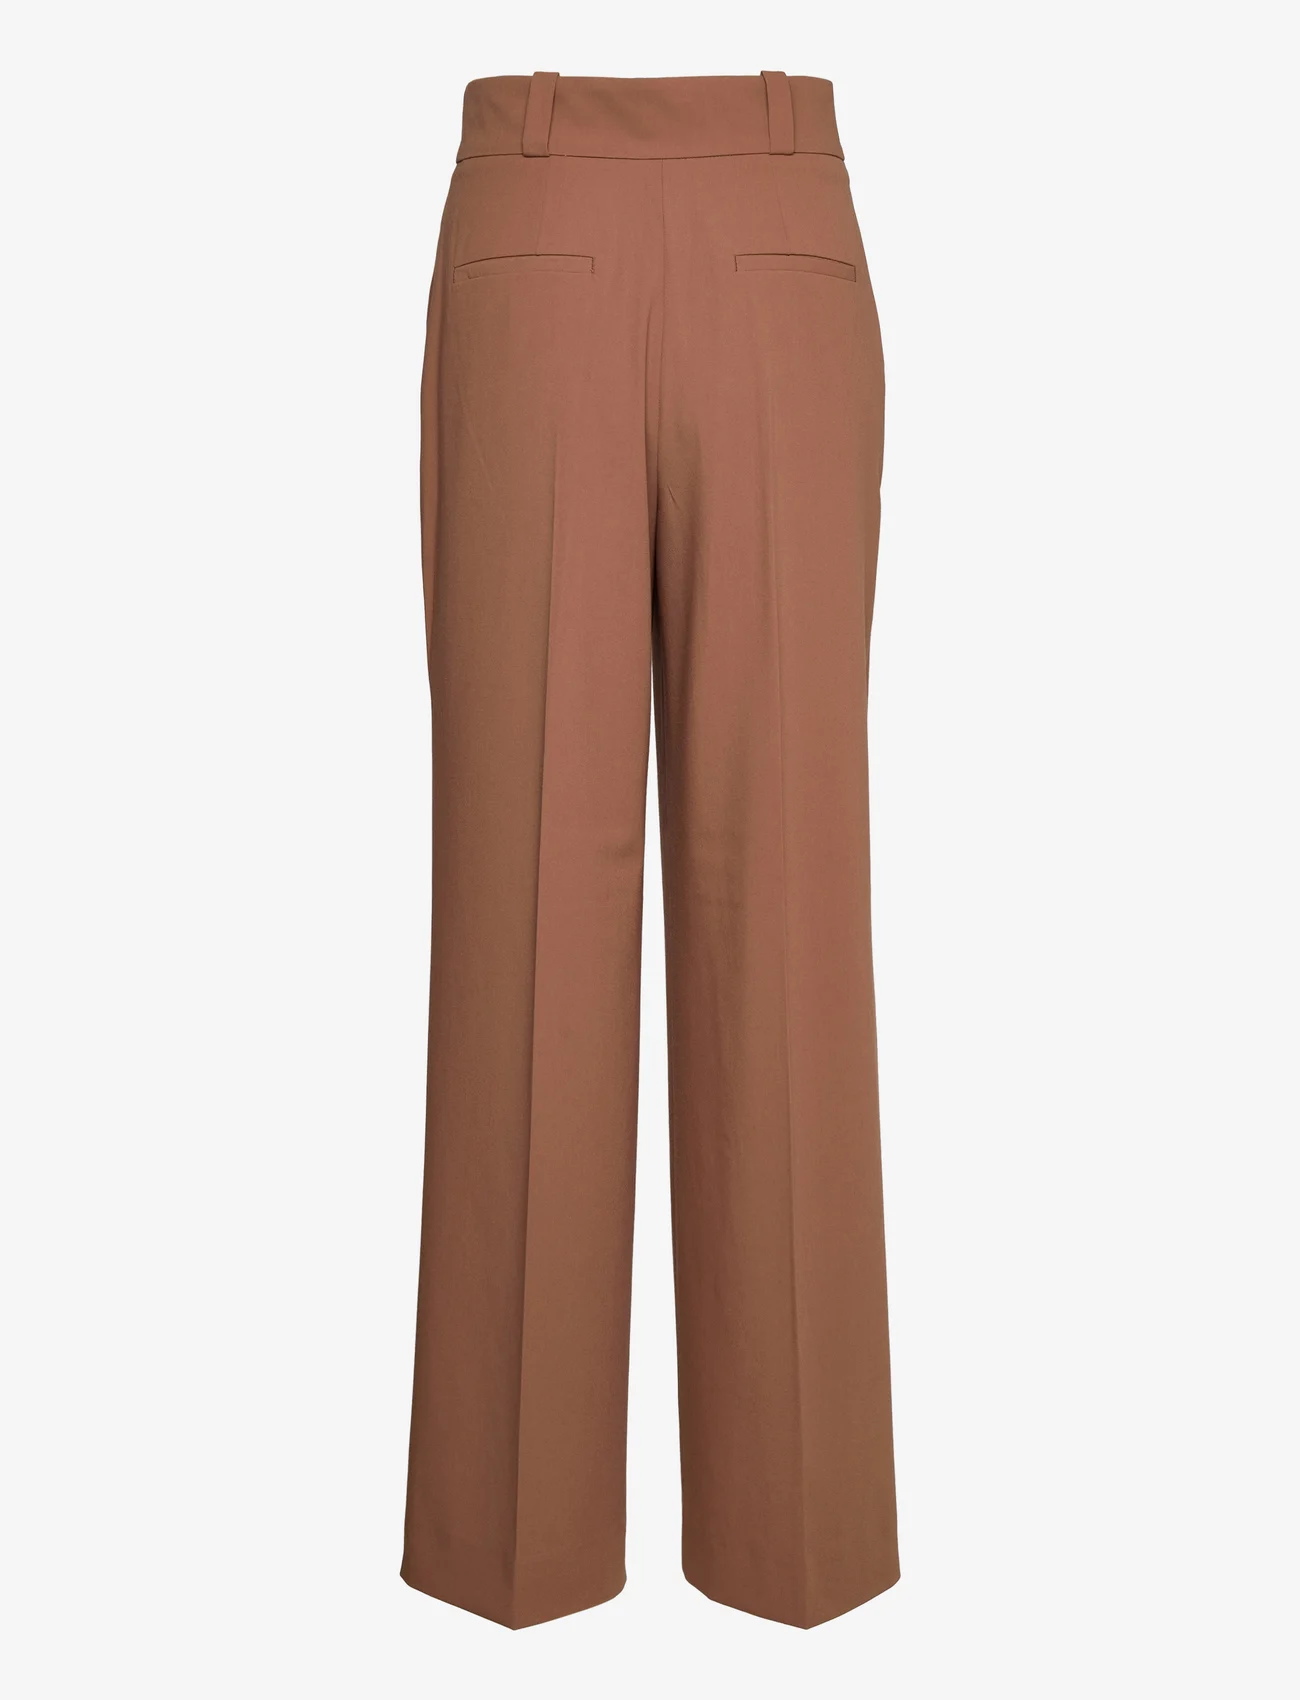 IVY OAK - Wide Leg Pants - feestelijke kleding voor outlet-prijzen - mid-brown - 1